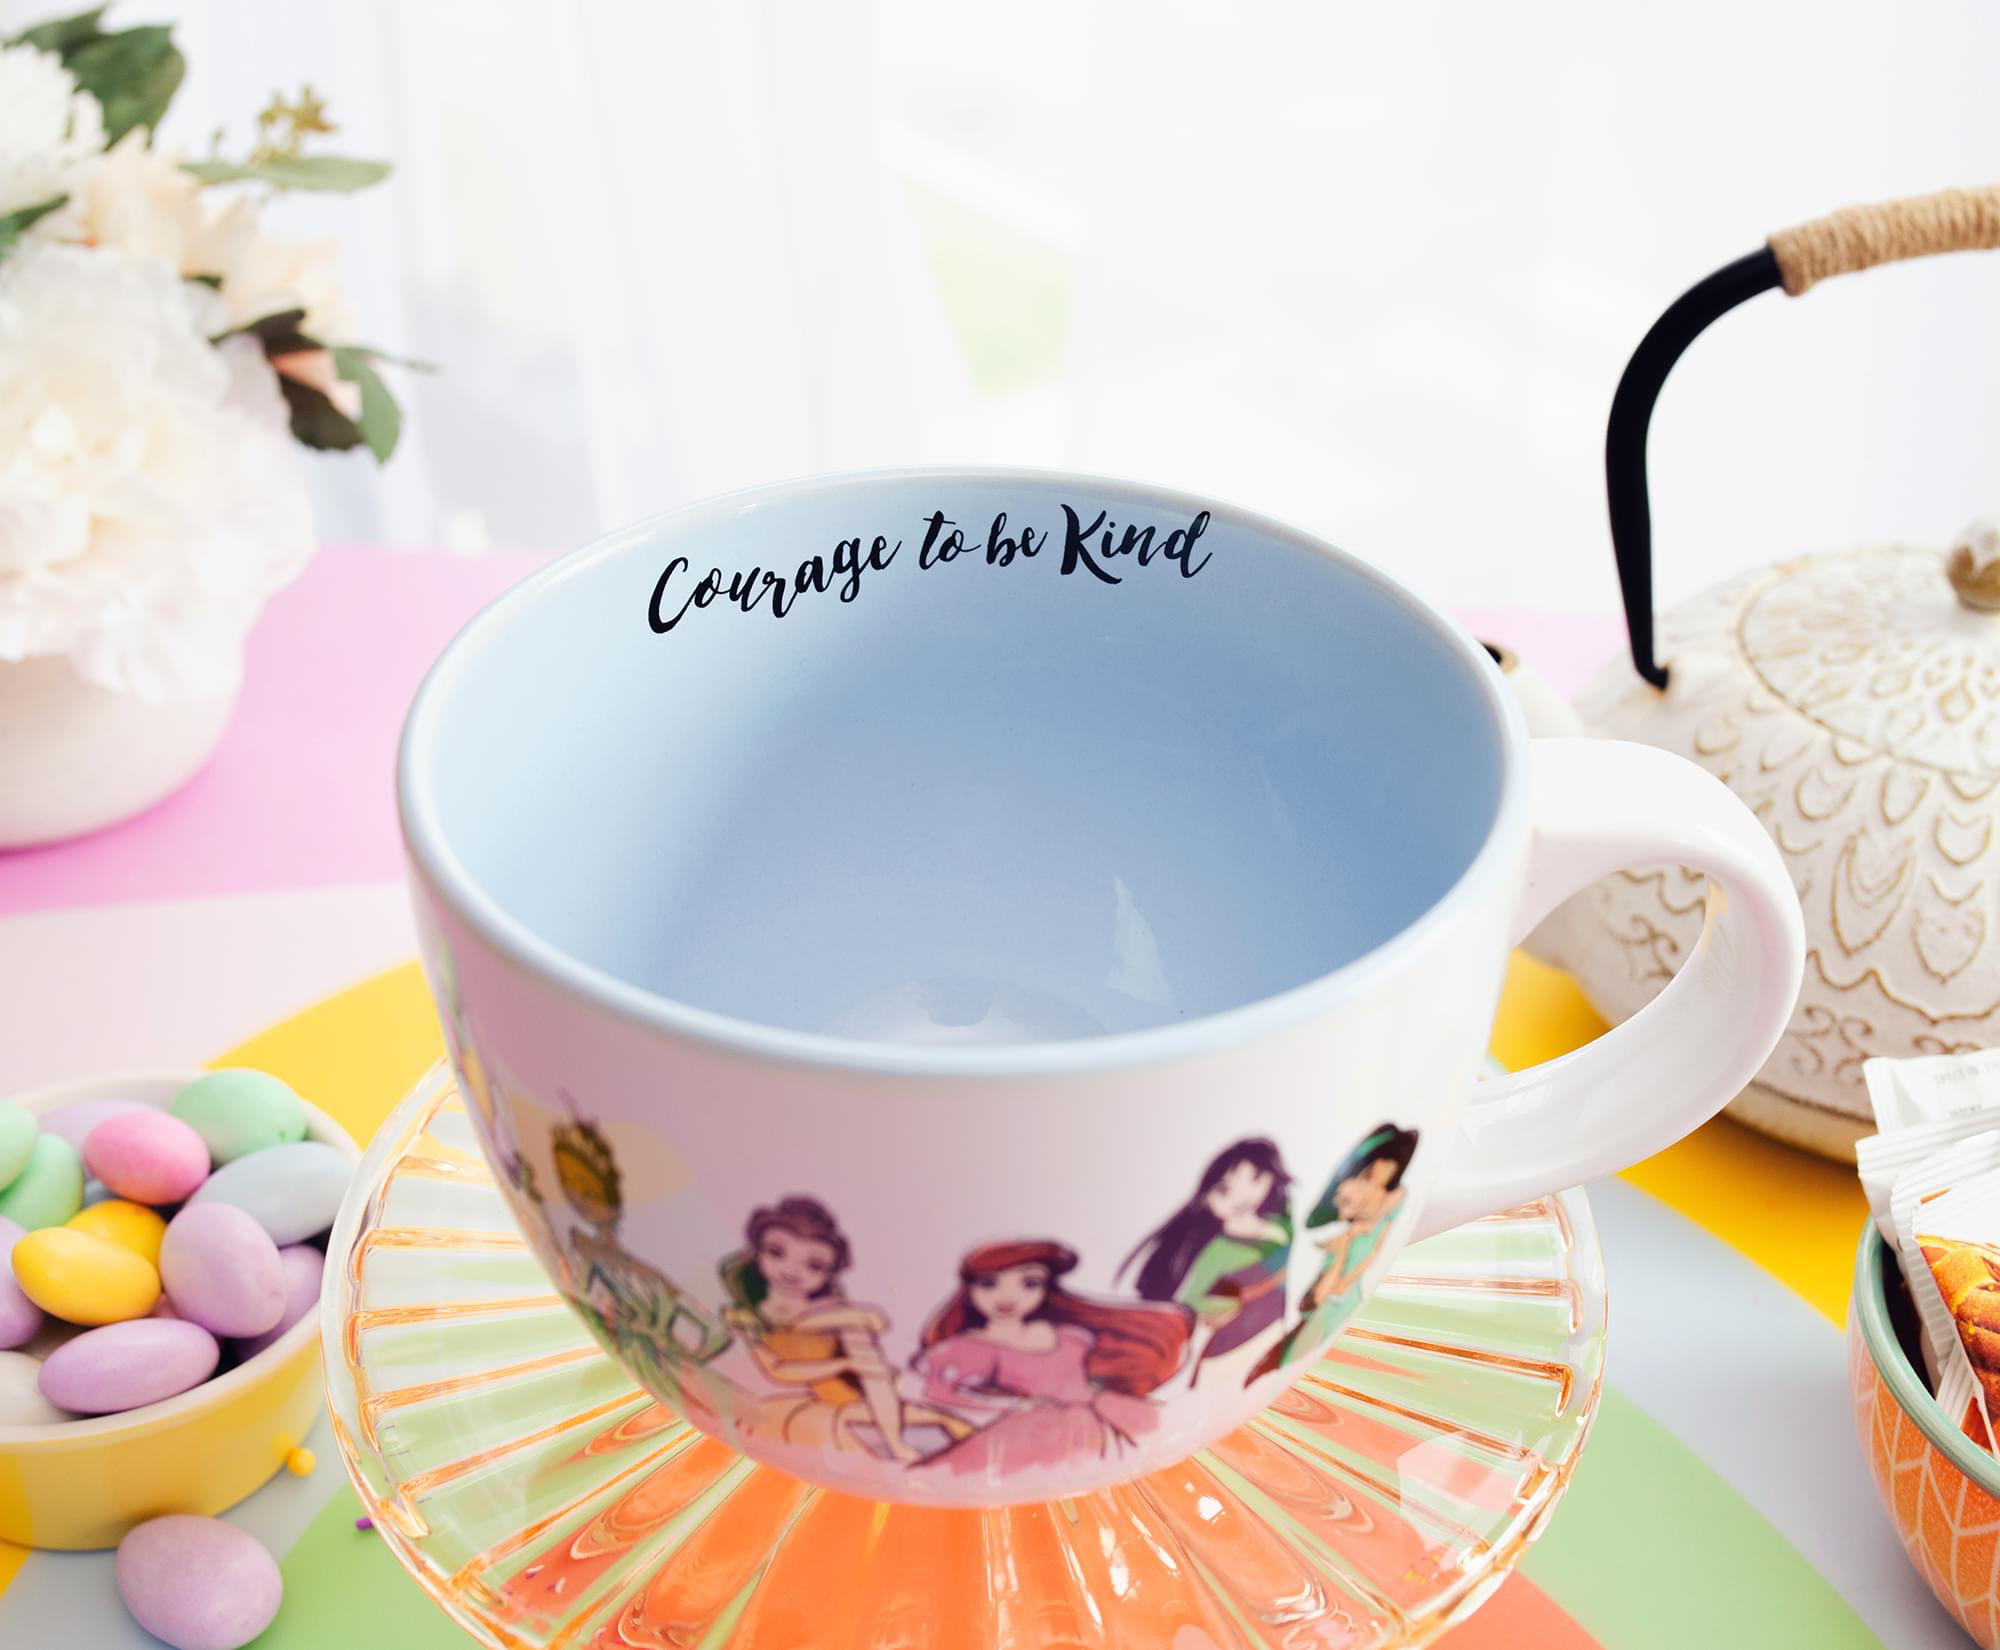 Silver Buffalo Disney Princess Icons Ceramic Camper Mug | Holds 20 Ounces